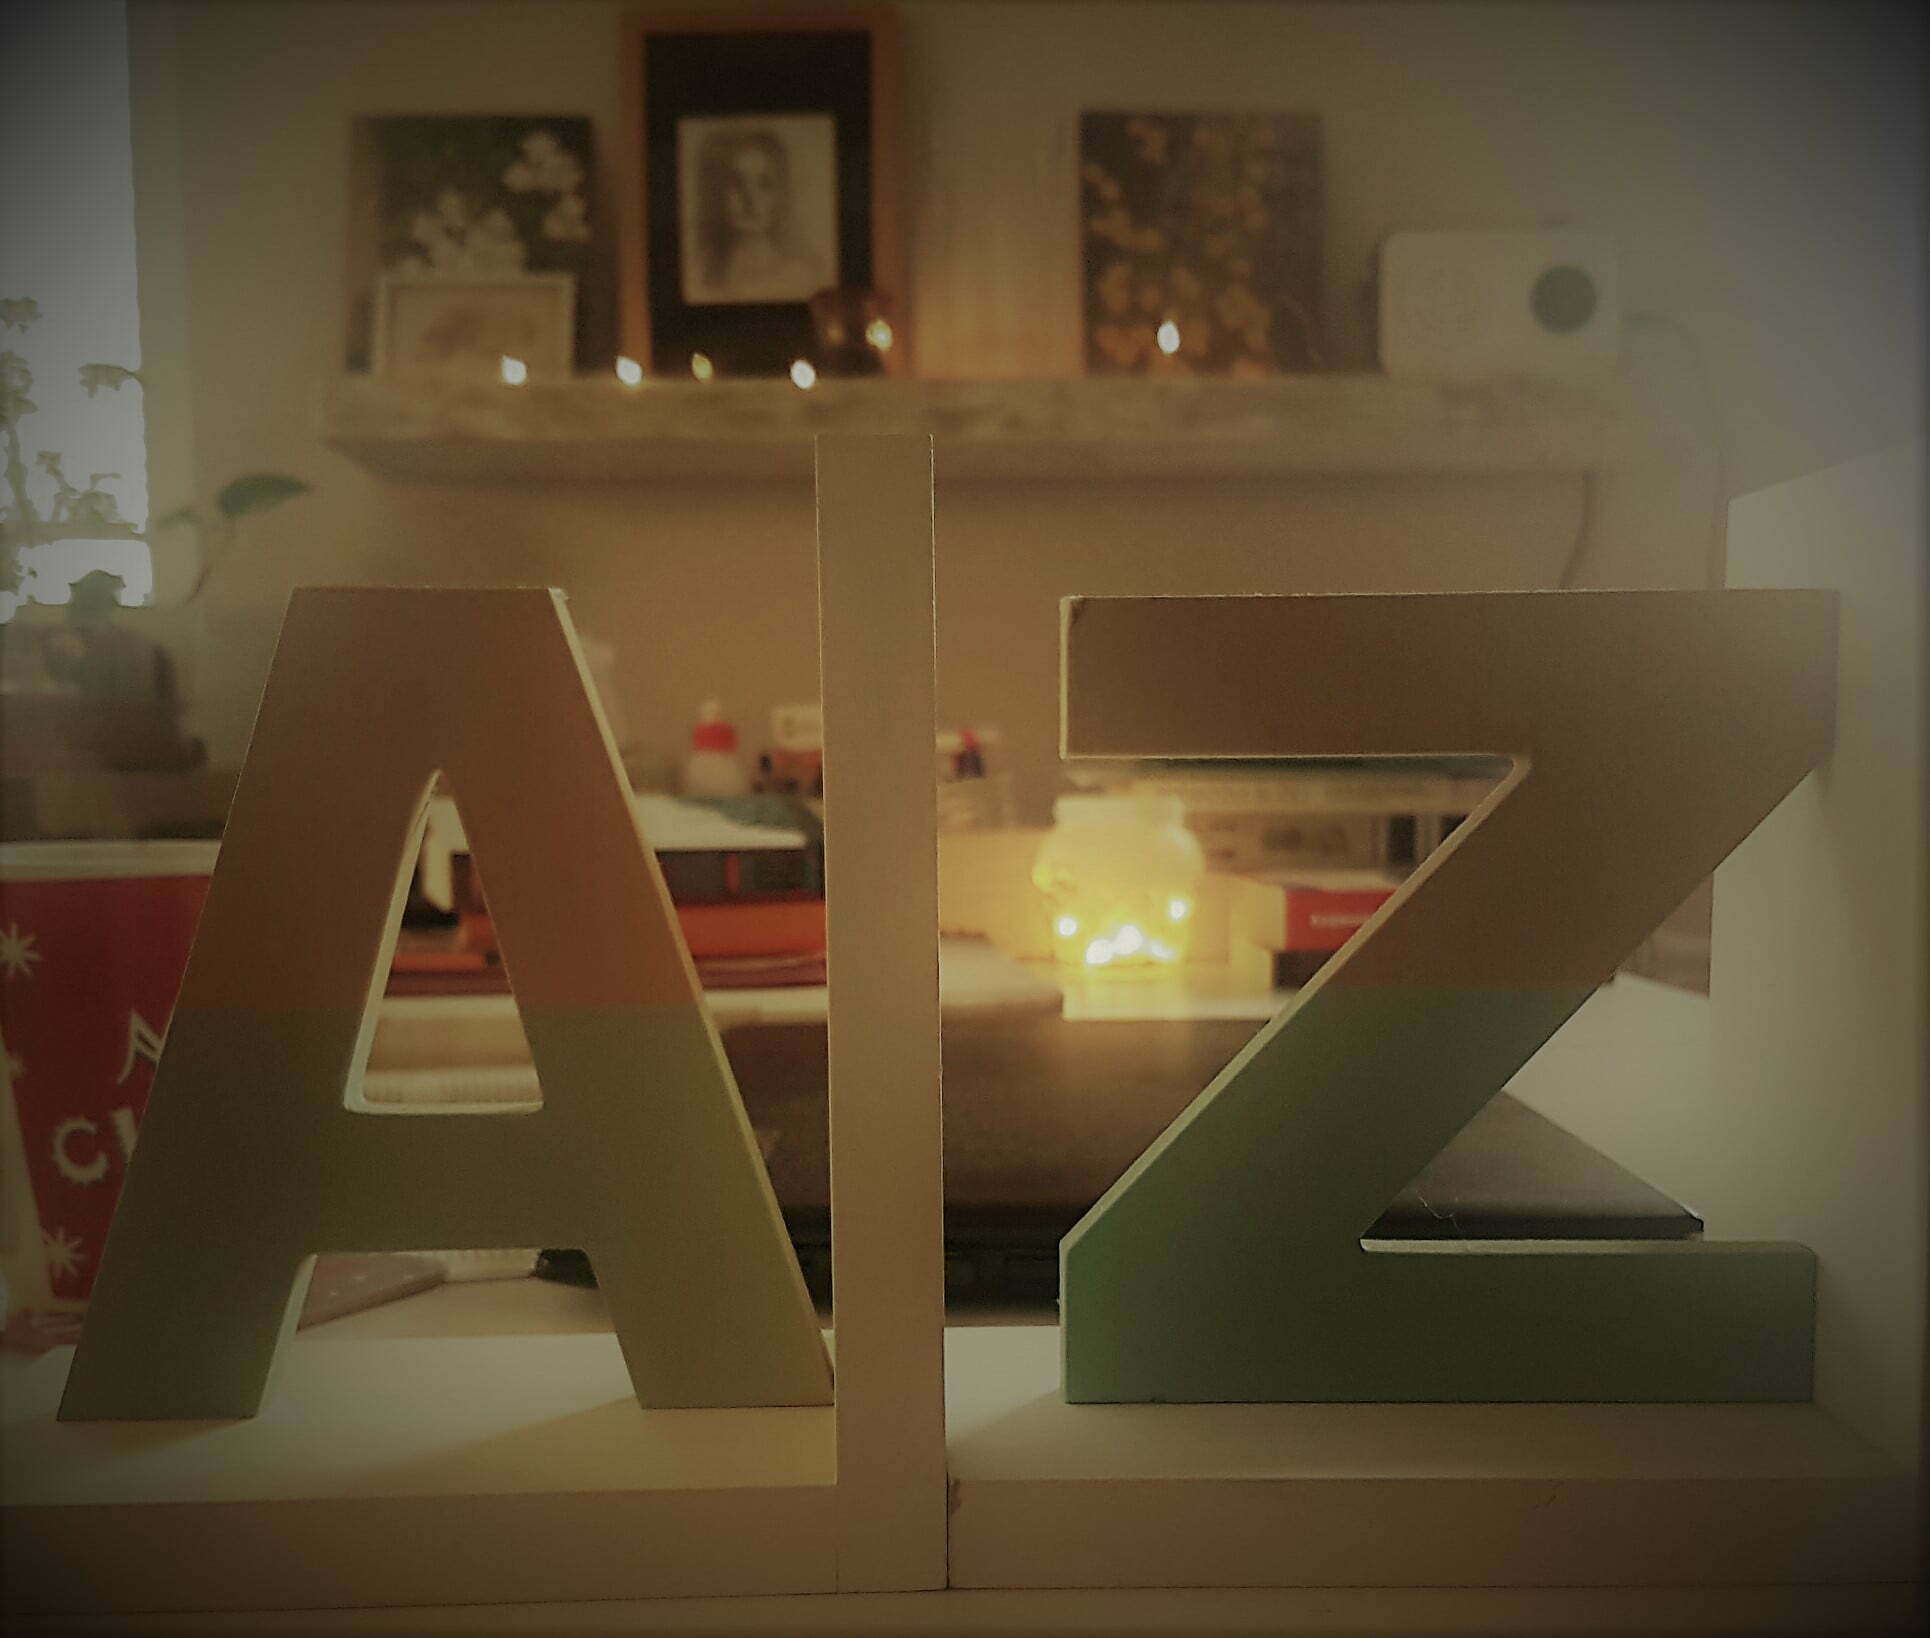 Drewniane literki A i Z, symbolizujące alfabet Oli, z tyłu cały zabałaganiony stól - książki, kawa, lampki, obrazki